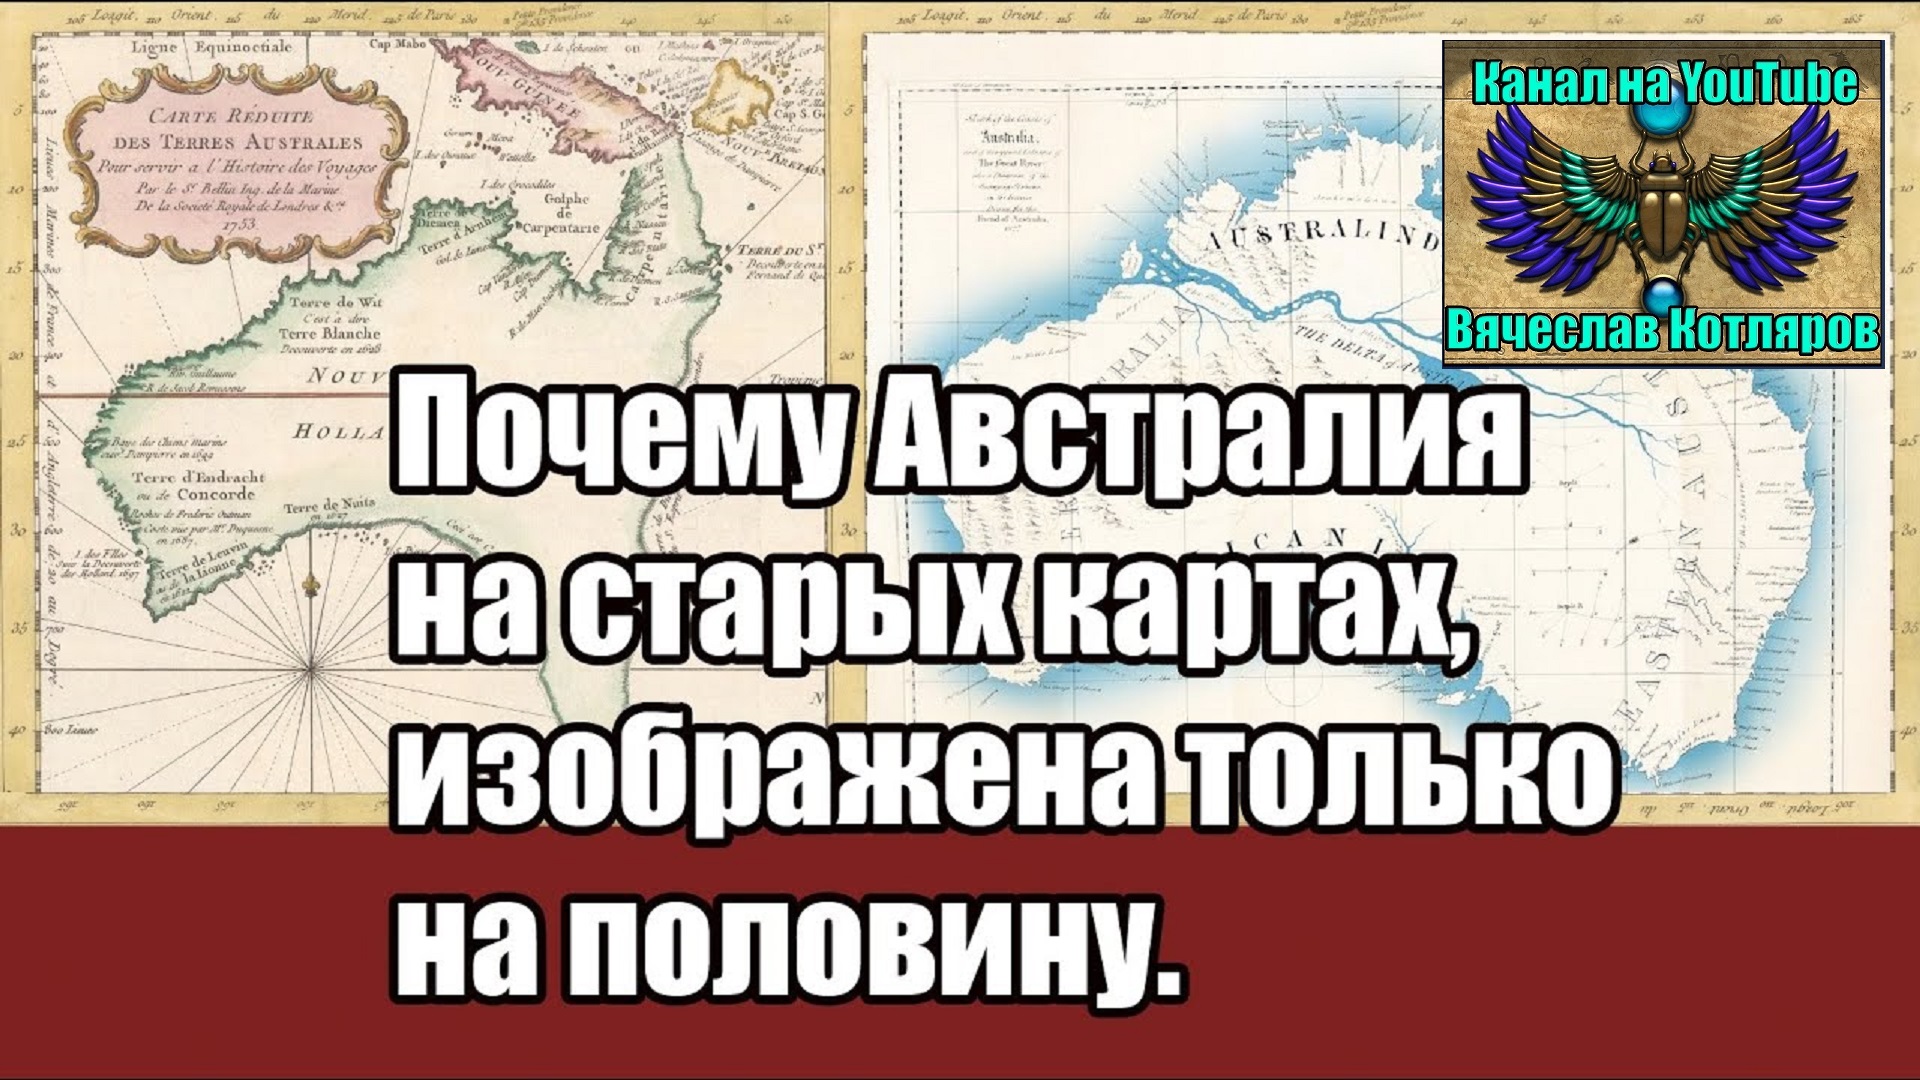 Почему Офстралия на старых картах, изображена только на половину. (Л.Д.О. 216 ч.) Вячеслав Котляров.